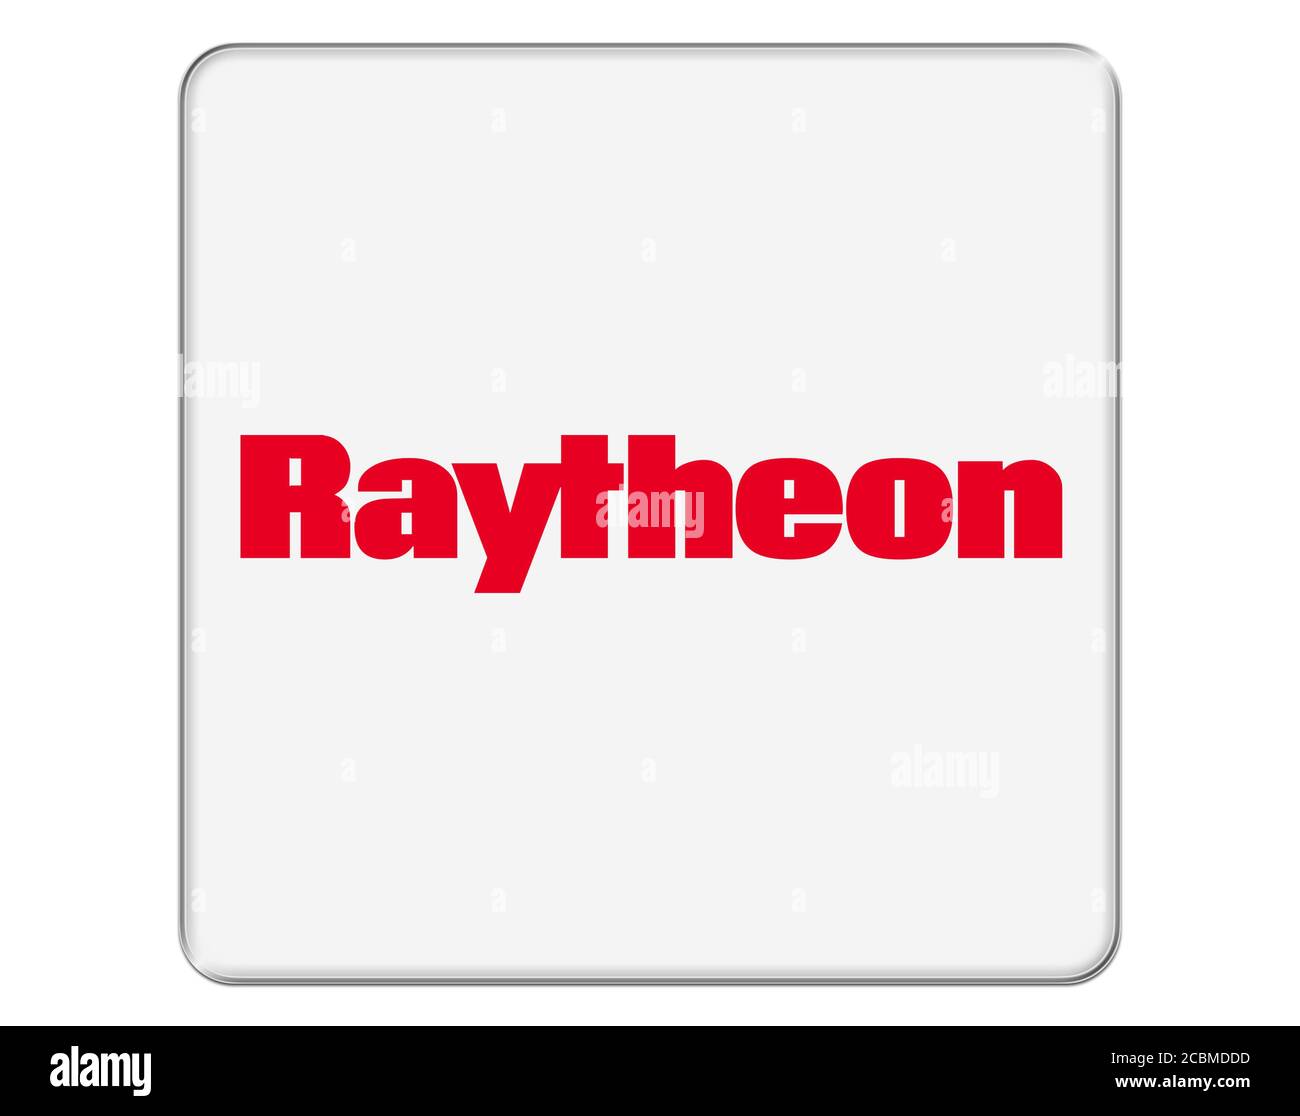 Raytheon Stock Photo